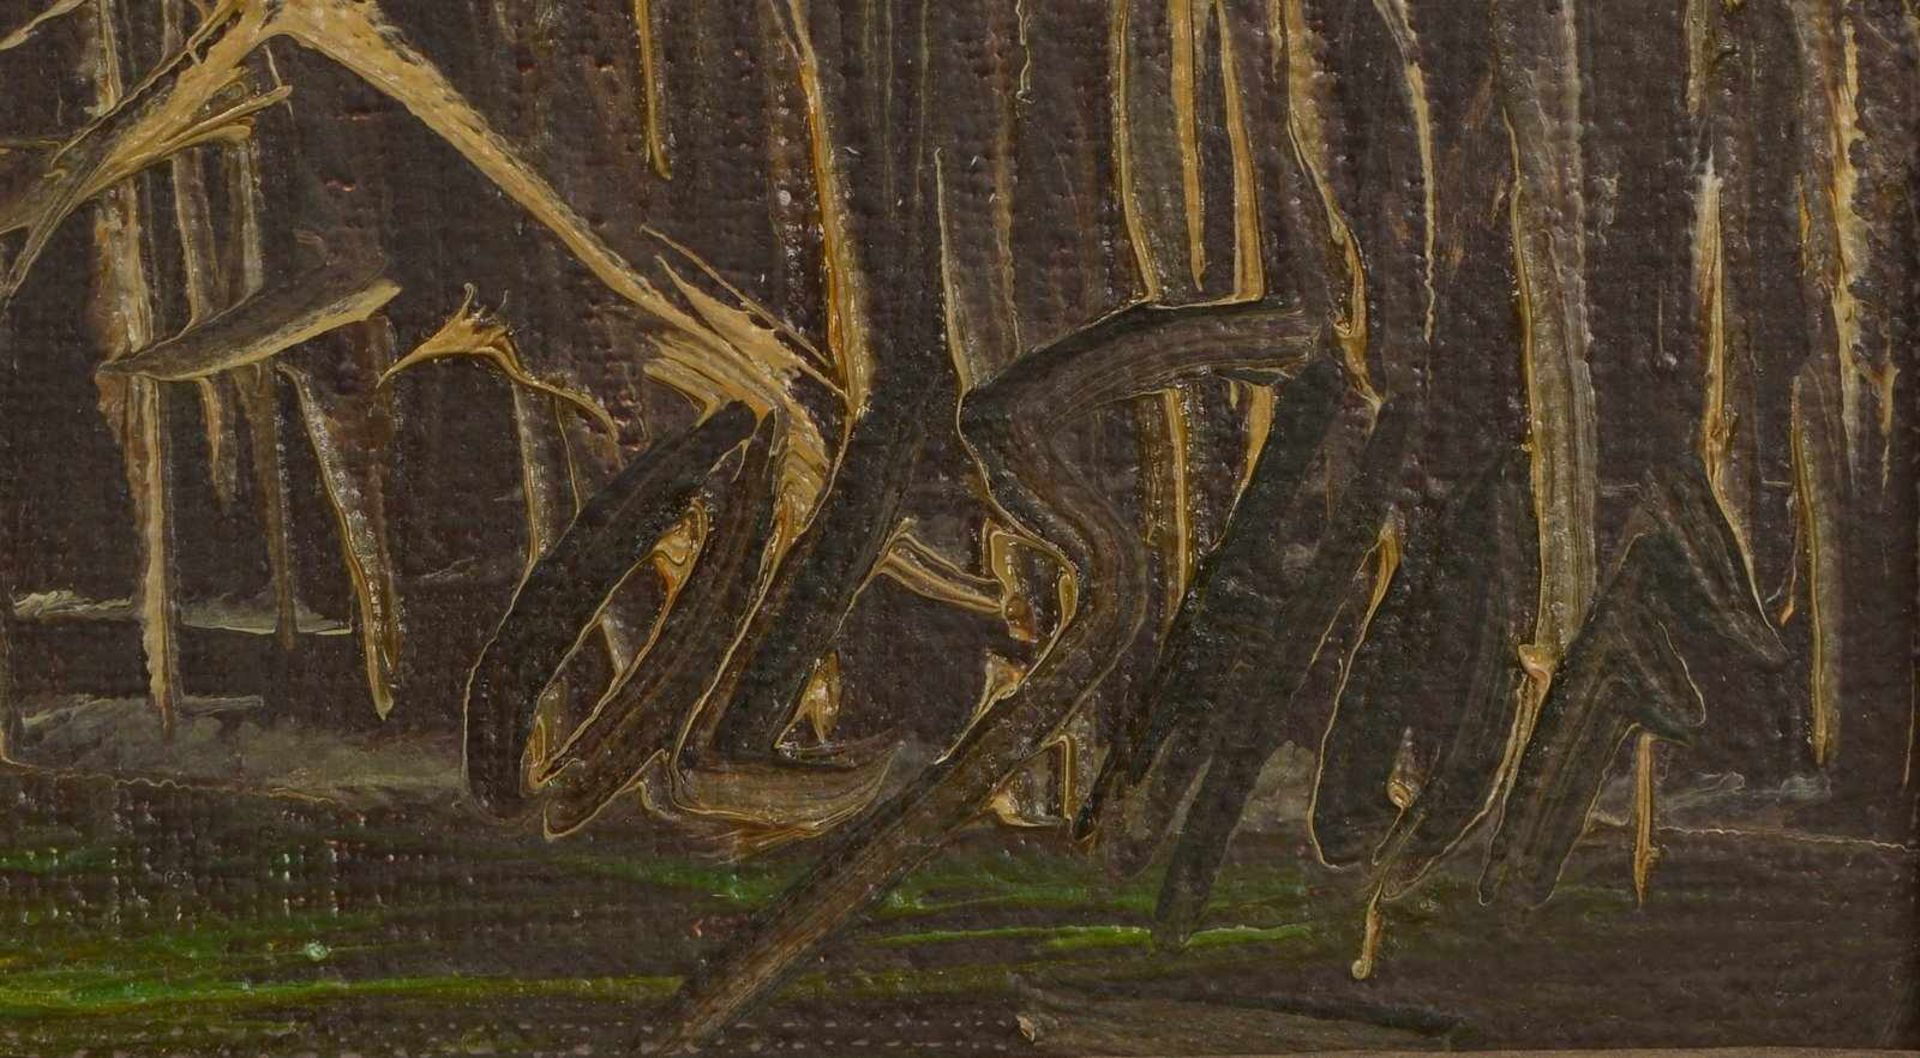 Gemälde, 'Seenlandschaft', Öl/Lw, unten rechts (nicht eindeutig leserlich) signiert; Bildmaße 50 x - Bild 2 aus 2